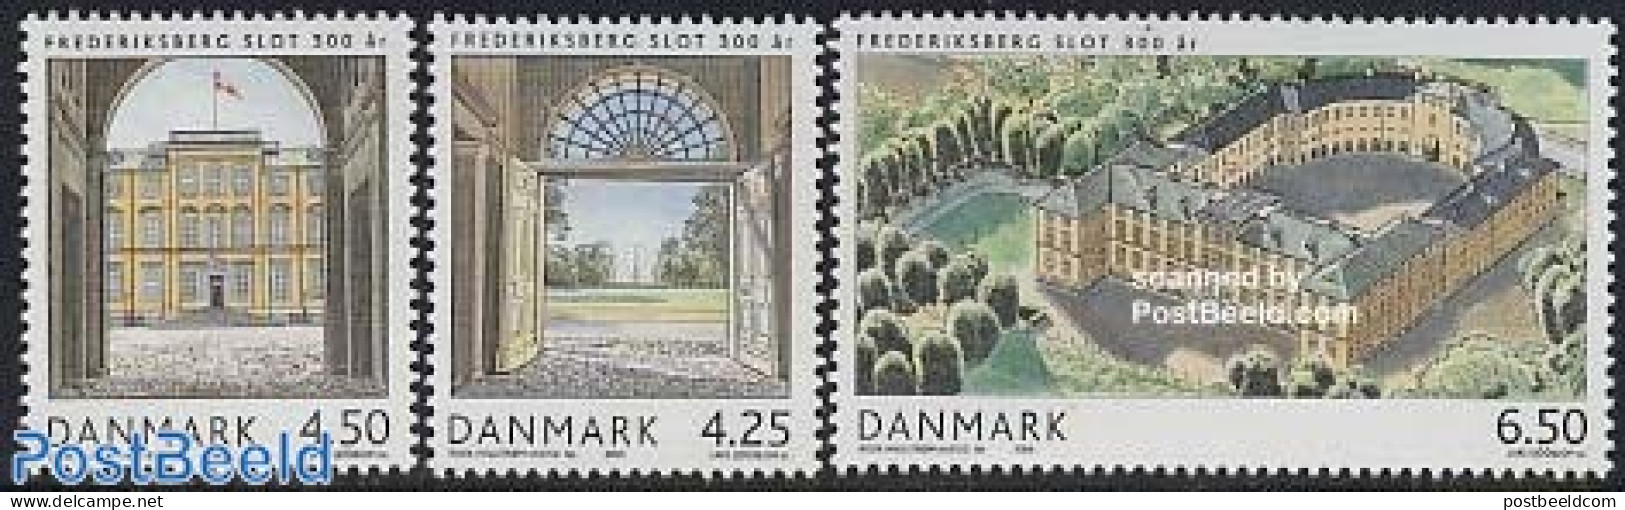 Denmark 2004 Frederiksberg 3v, Mint NH, Art - Castles & Fortifications - Unused Stamps